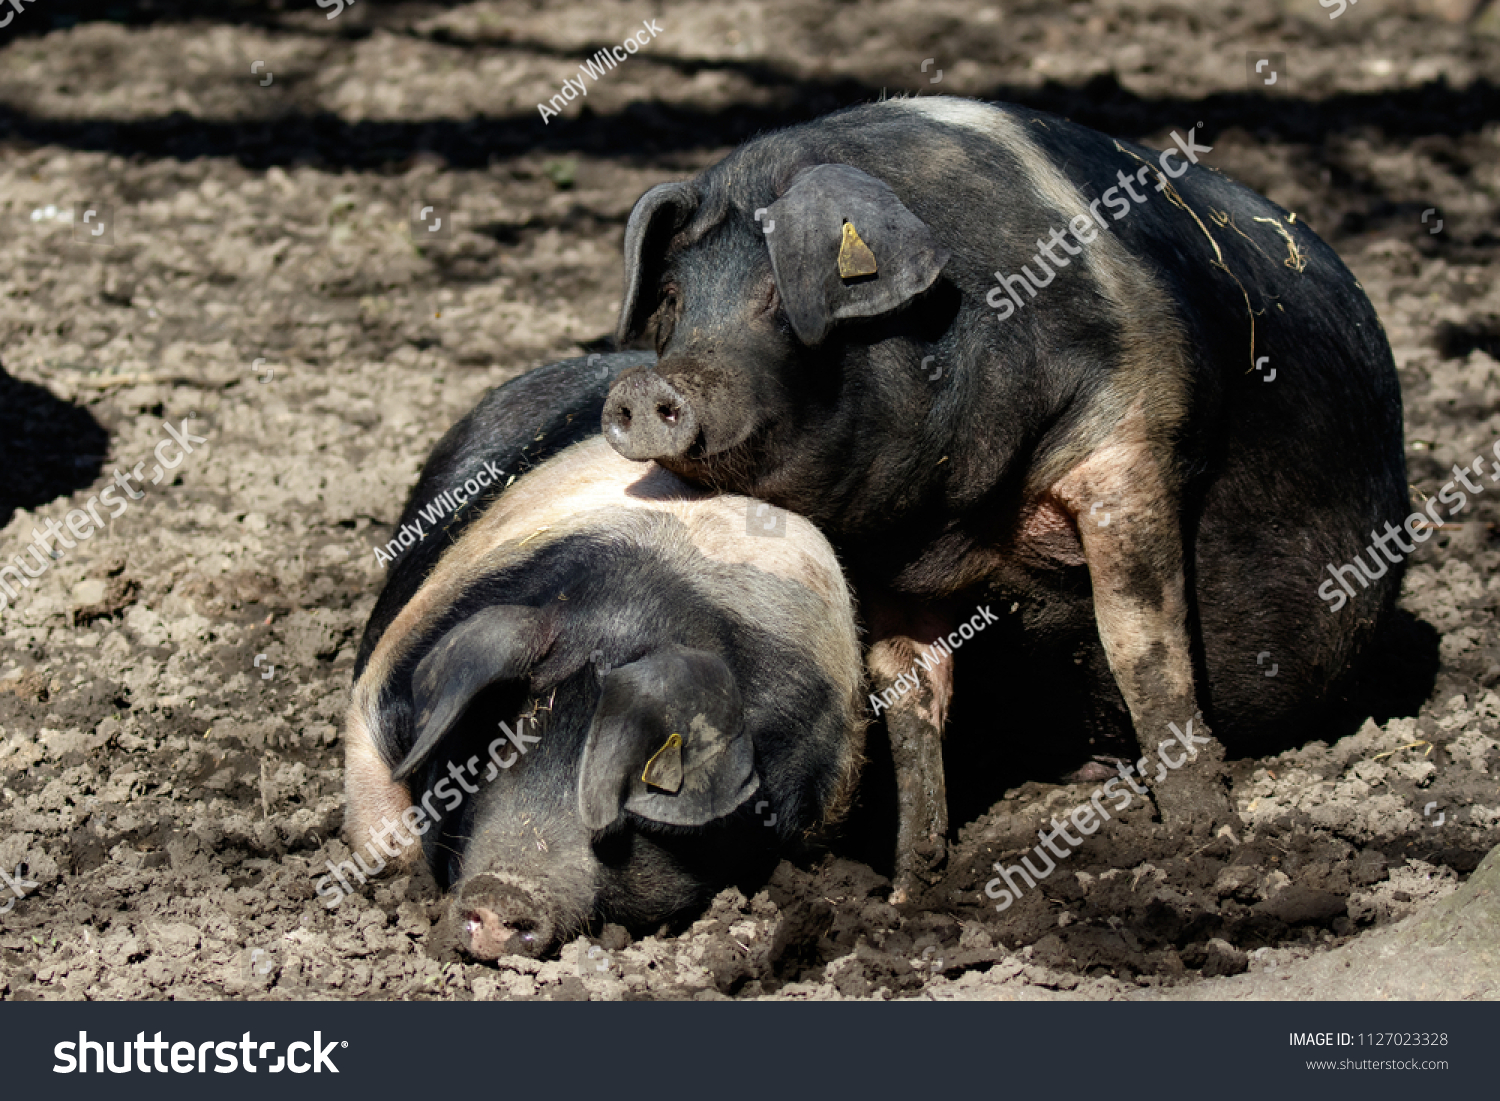 1/32ème britains saddleback boar/pig black-reference 2167 